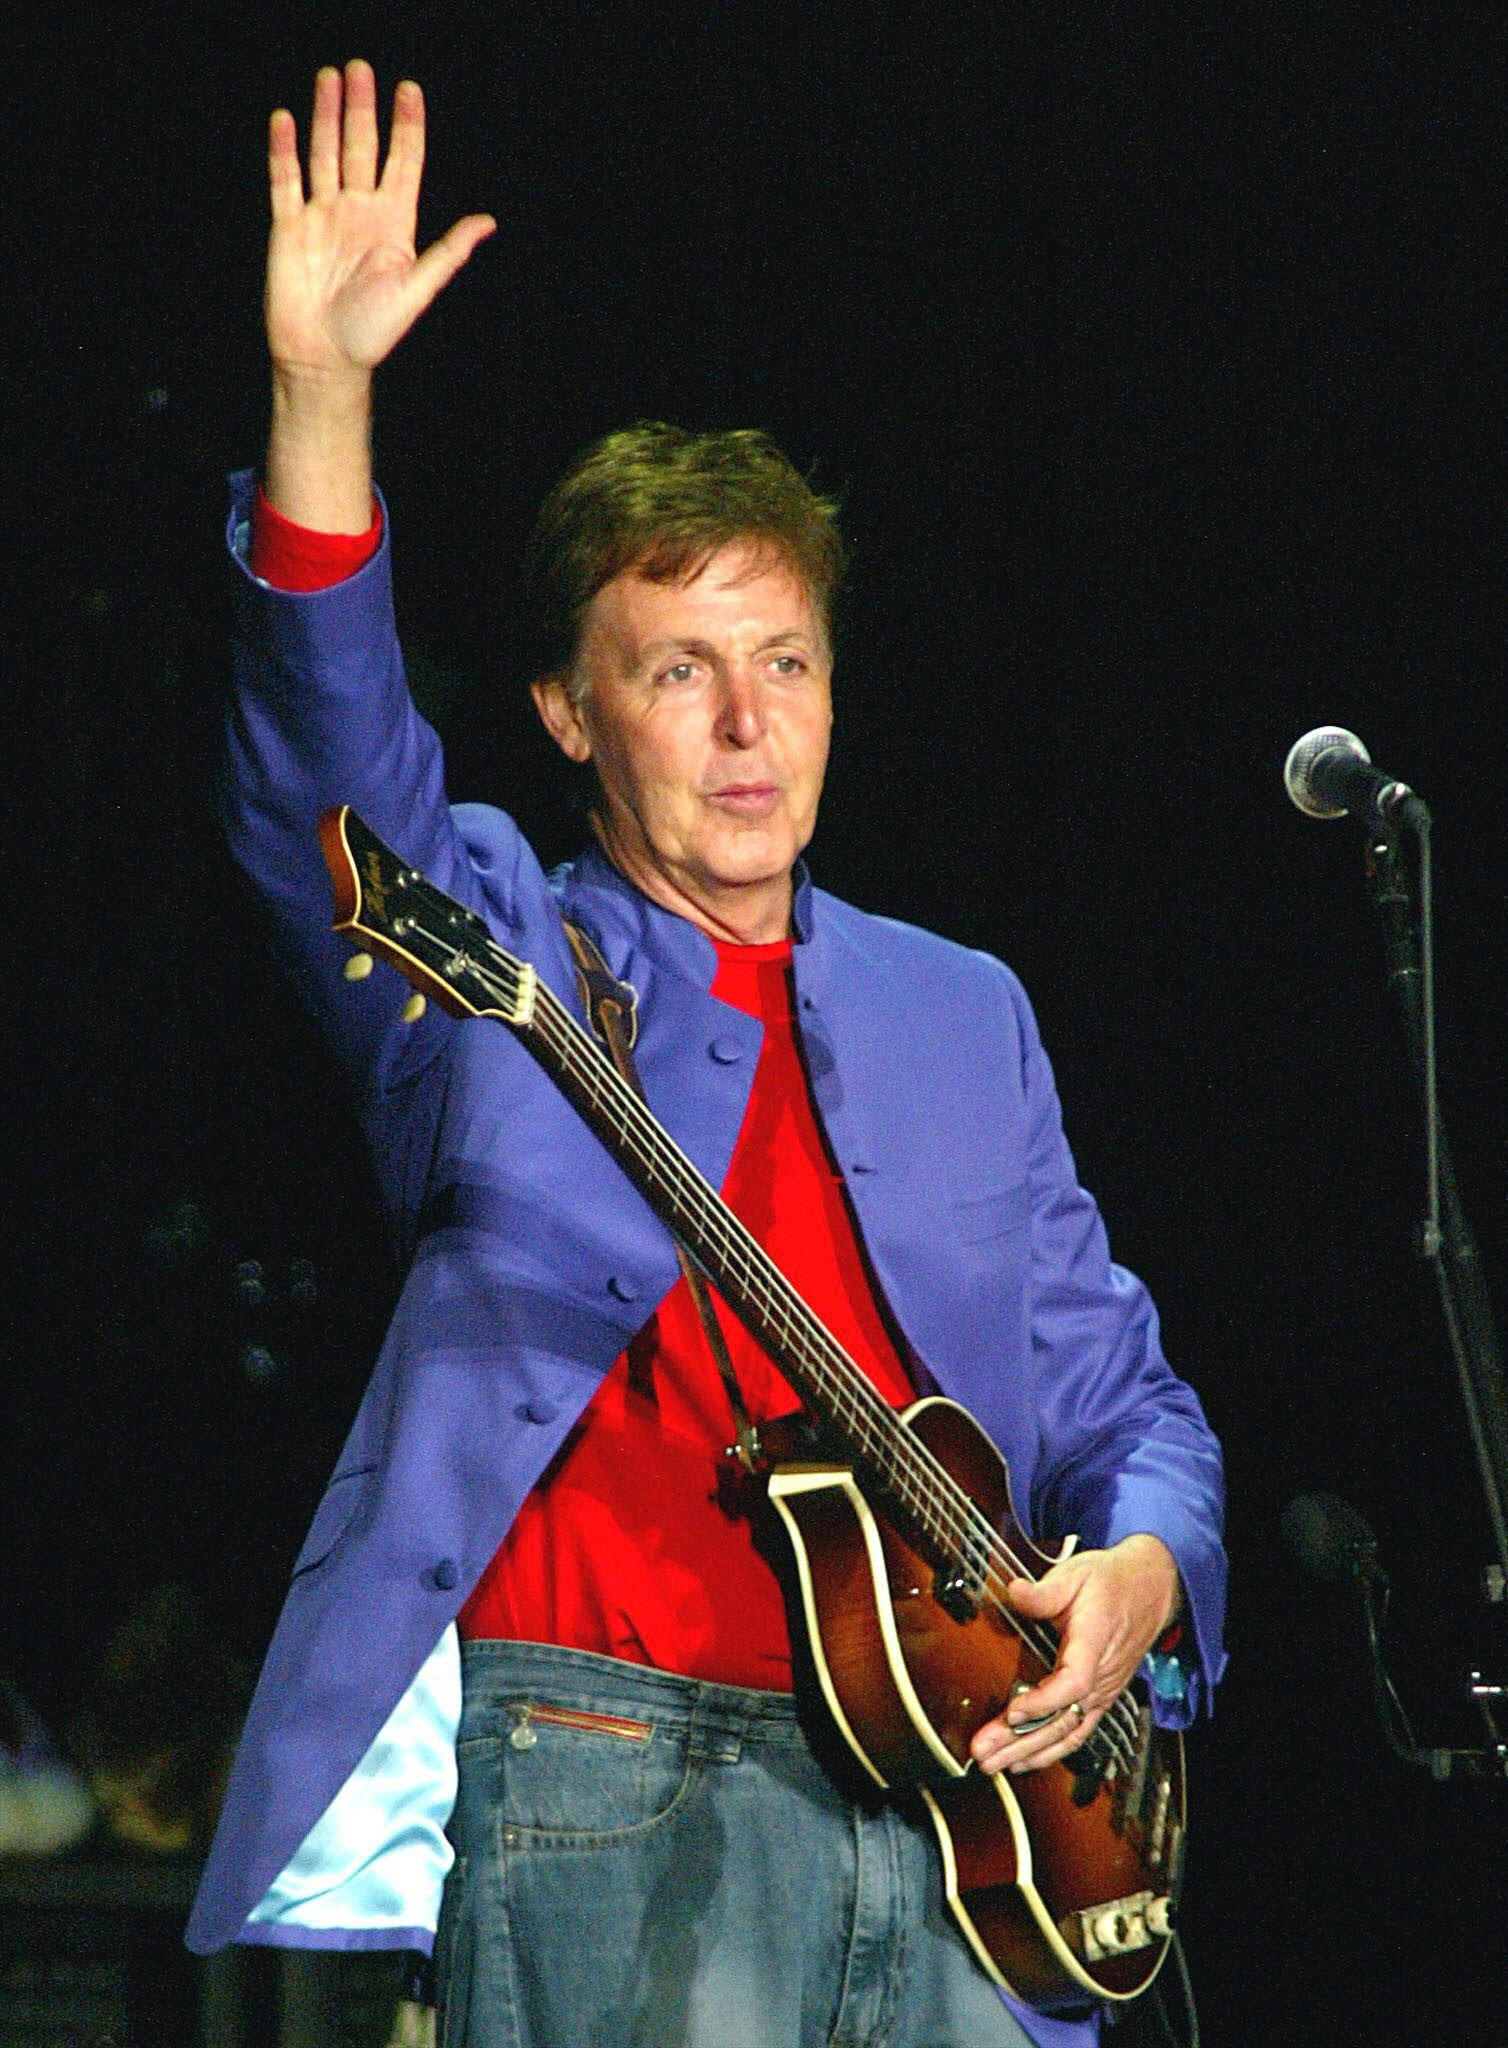 Paul McCartney actuará en el Estadio Olímpico de Barcelona el 17 de junio